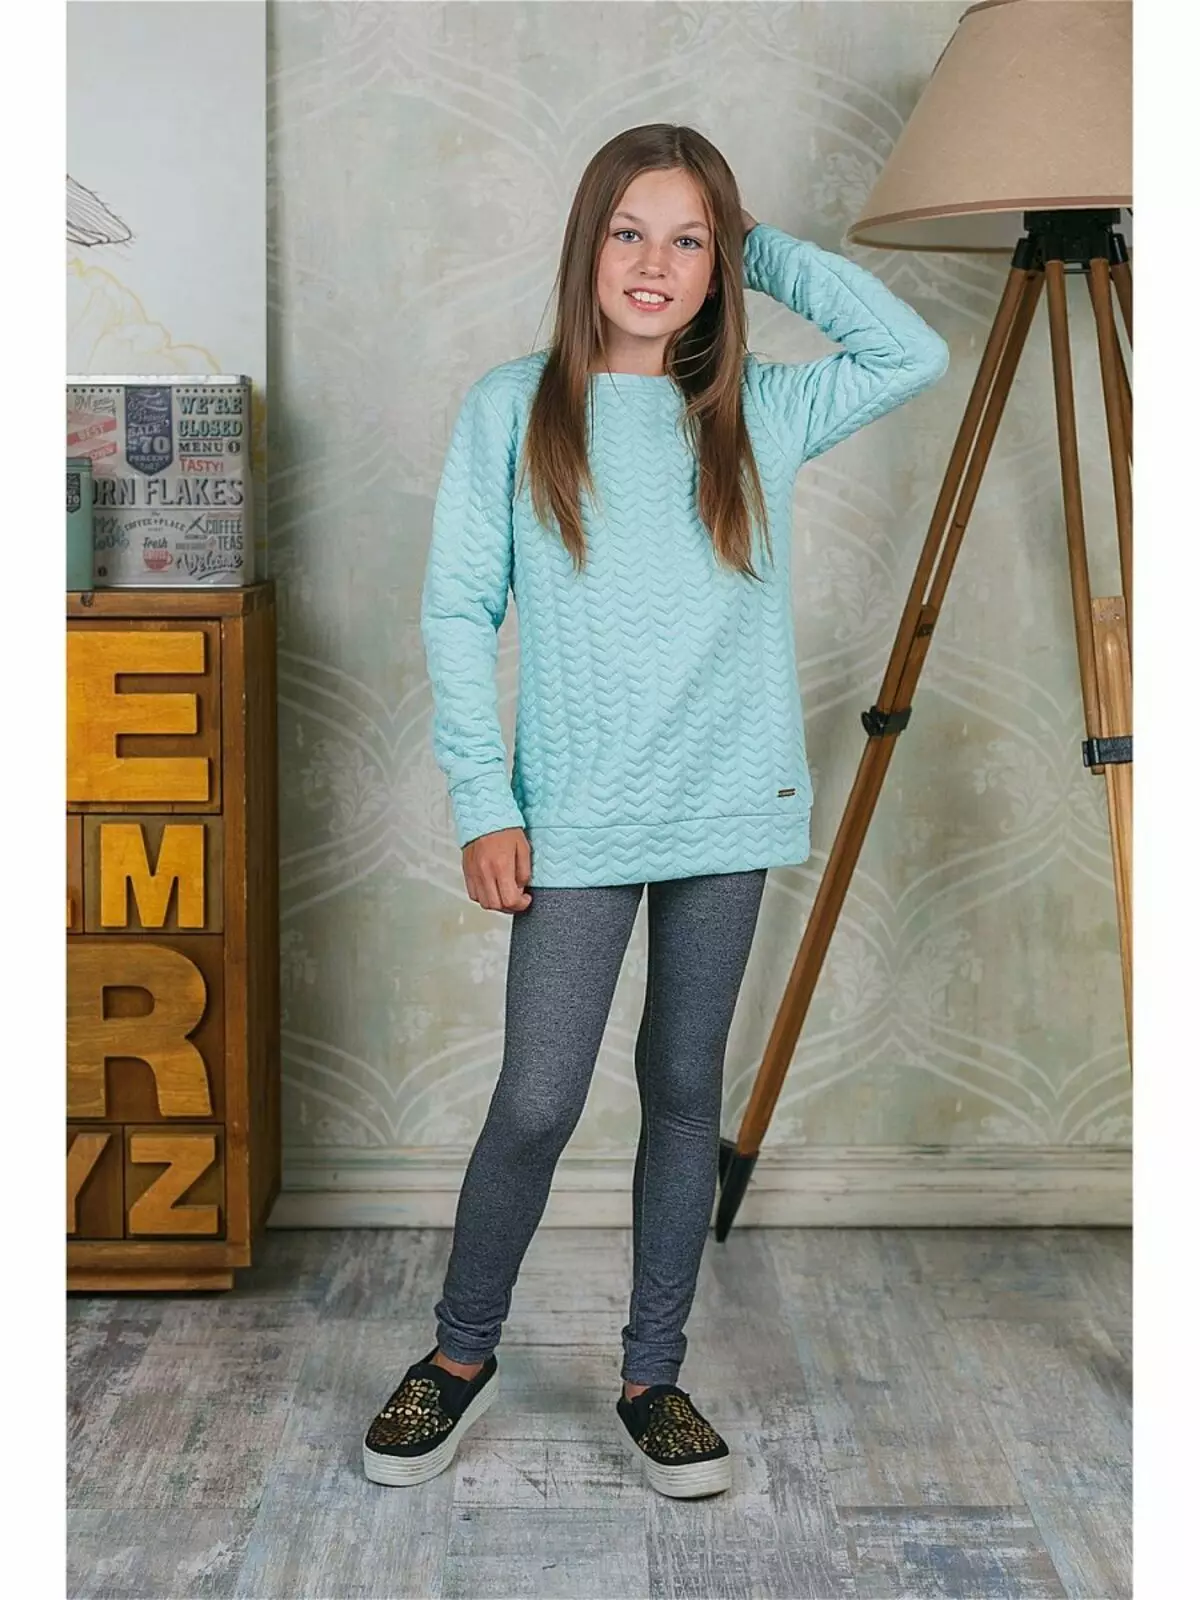 Sweatshirt foar it famke (80 foto's): adolesinte modellen foar famkes 10-12 en 13-14 jier âld, sweatshirt Faberlik, nekst, op bont, bliksem 1326_55